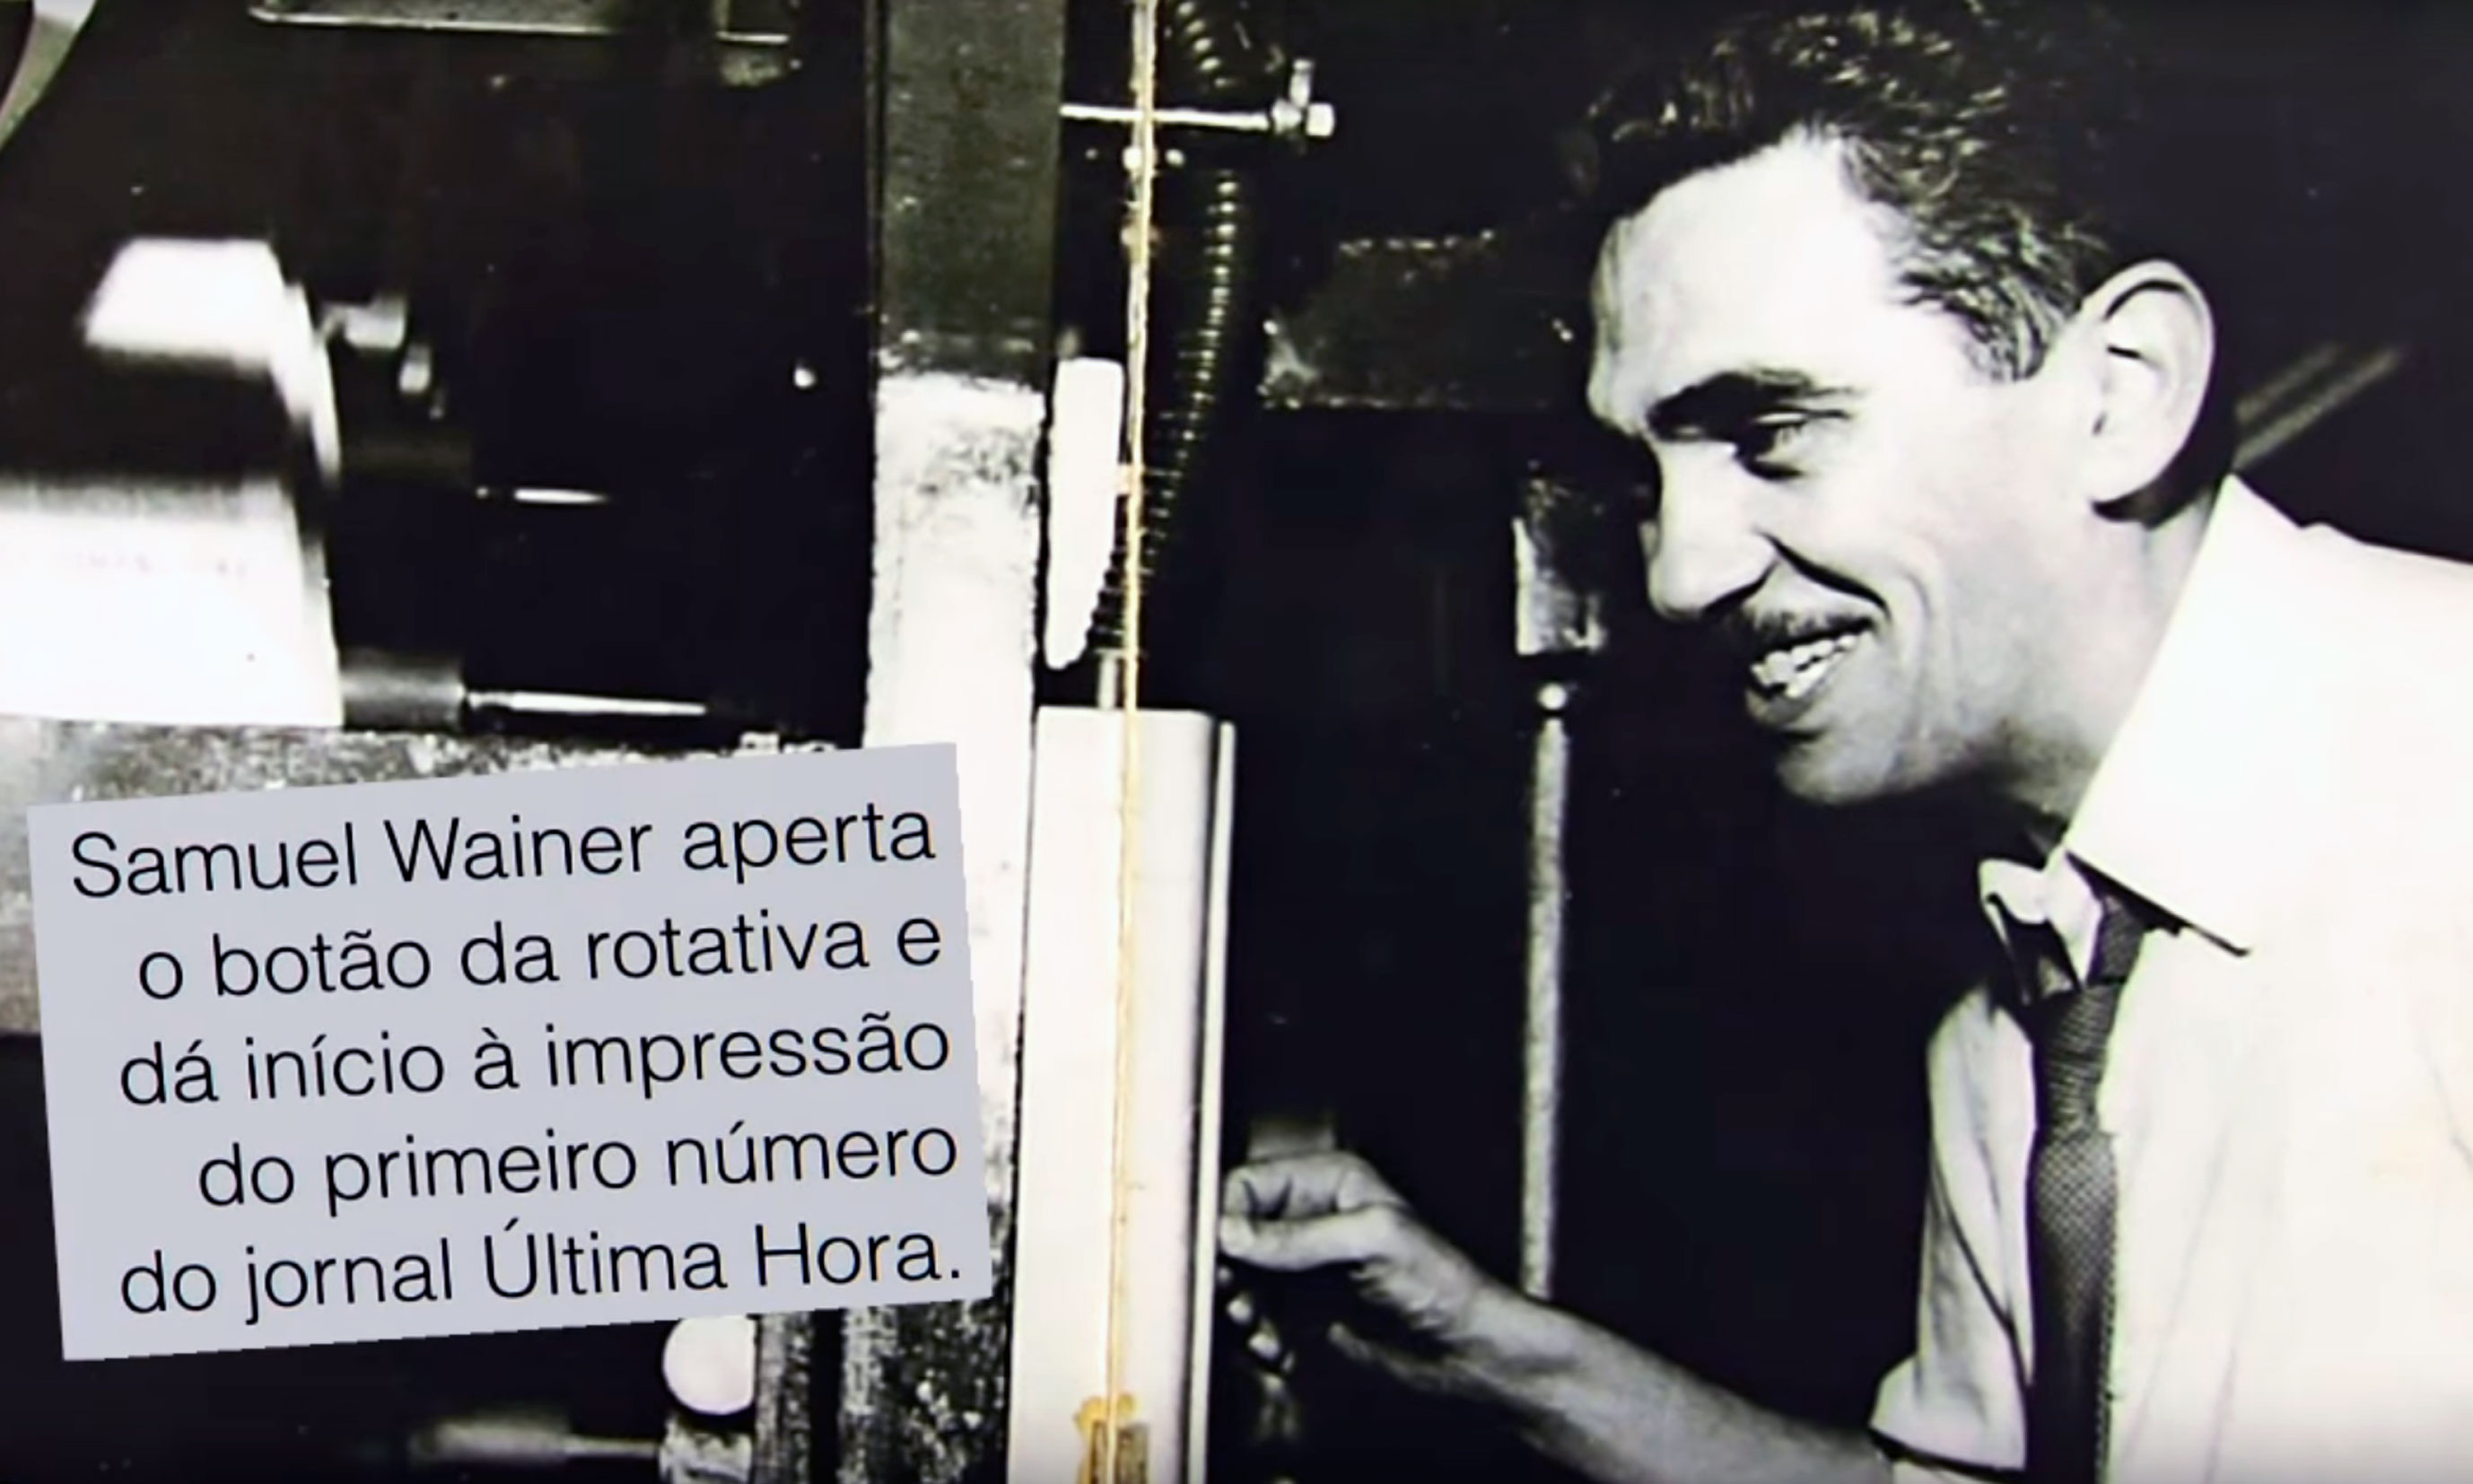 Exposição “Última Hora - Imagens de um Acervo” traz as memórias do jornal carioca do jornalista Samuel Wainer